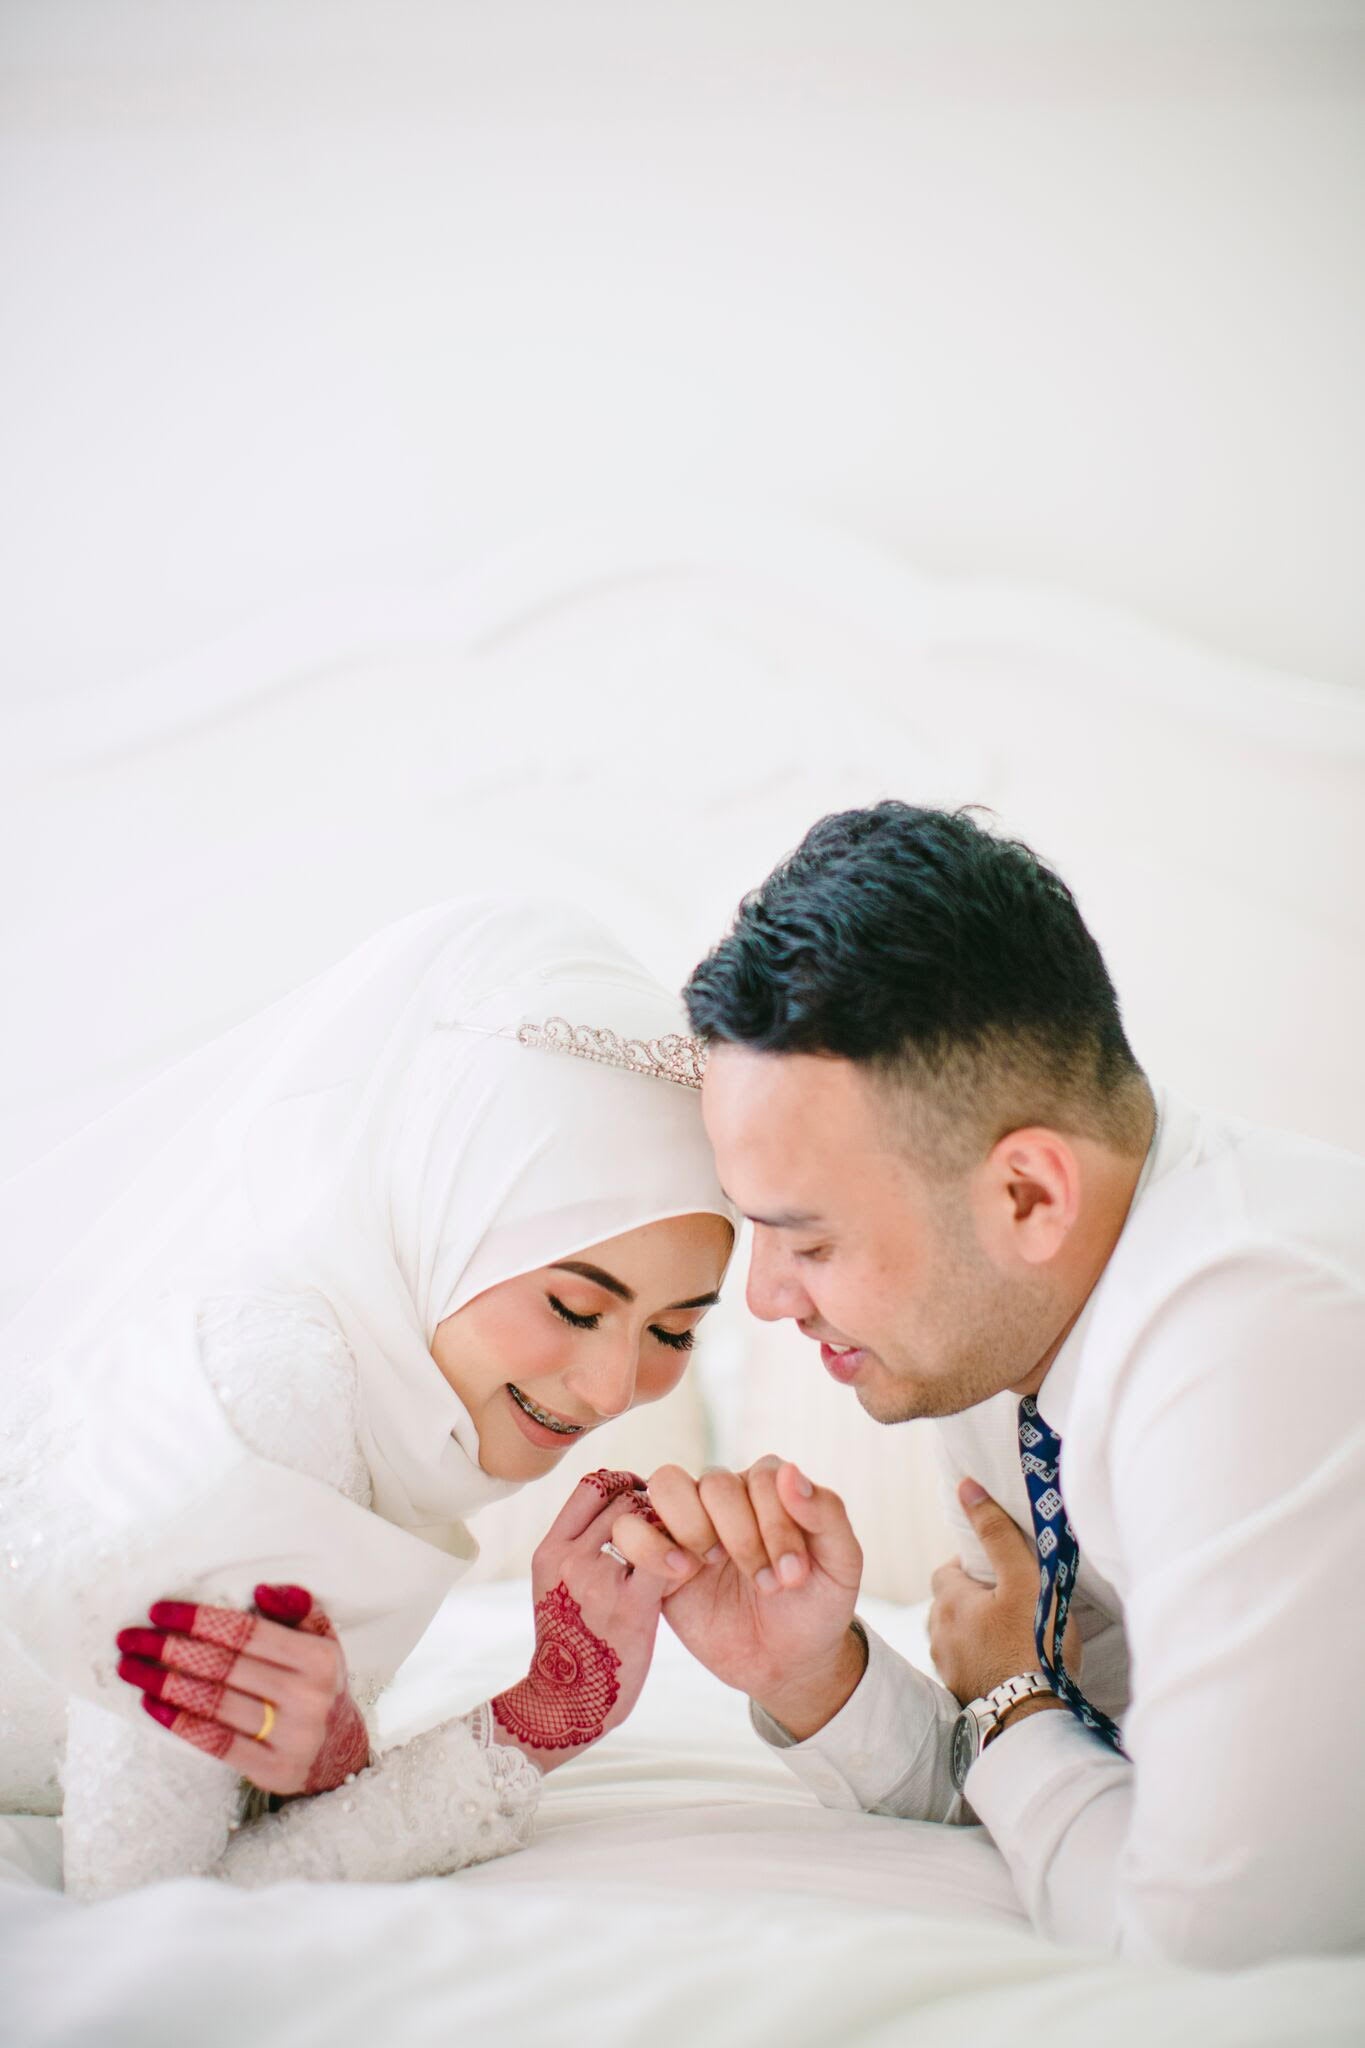 bespoke muslim wedding dress Malaysia